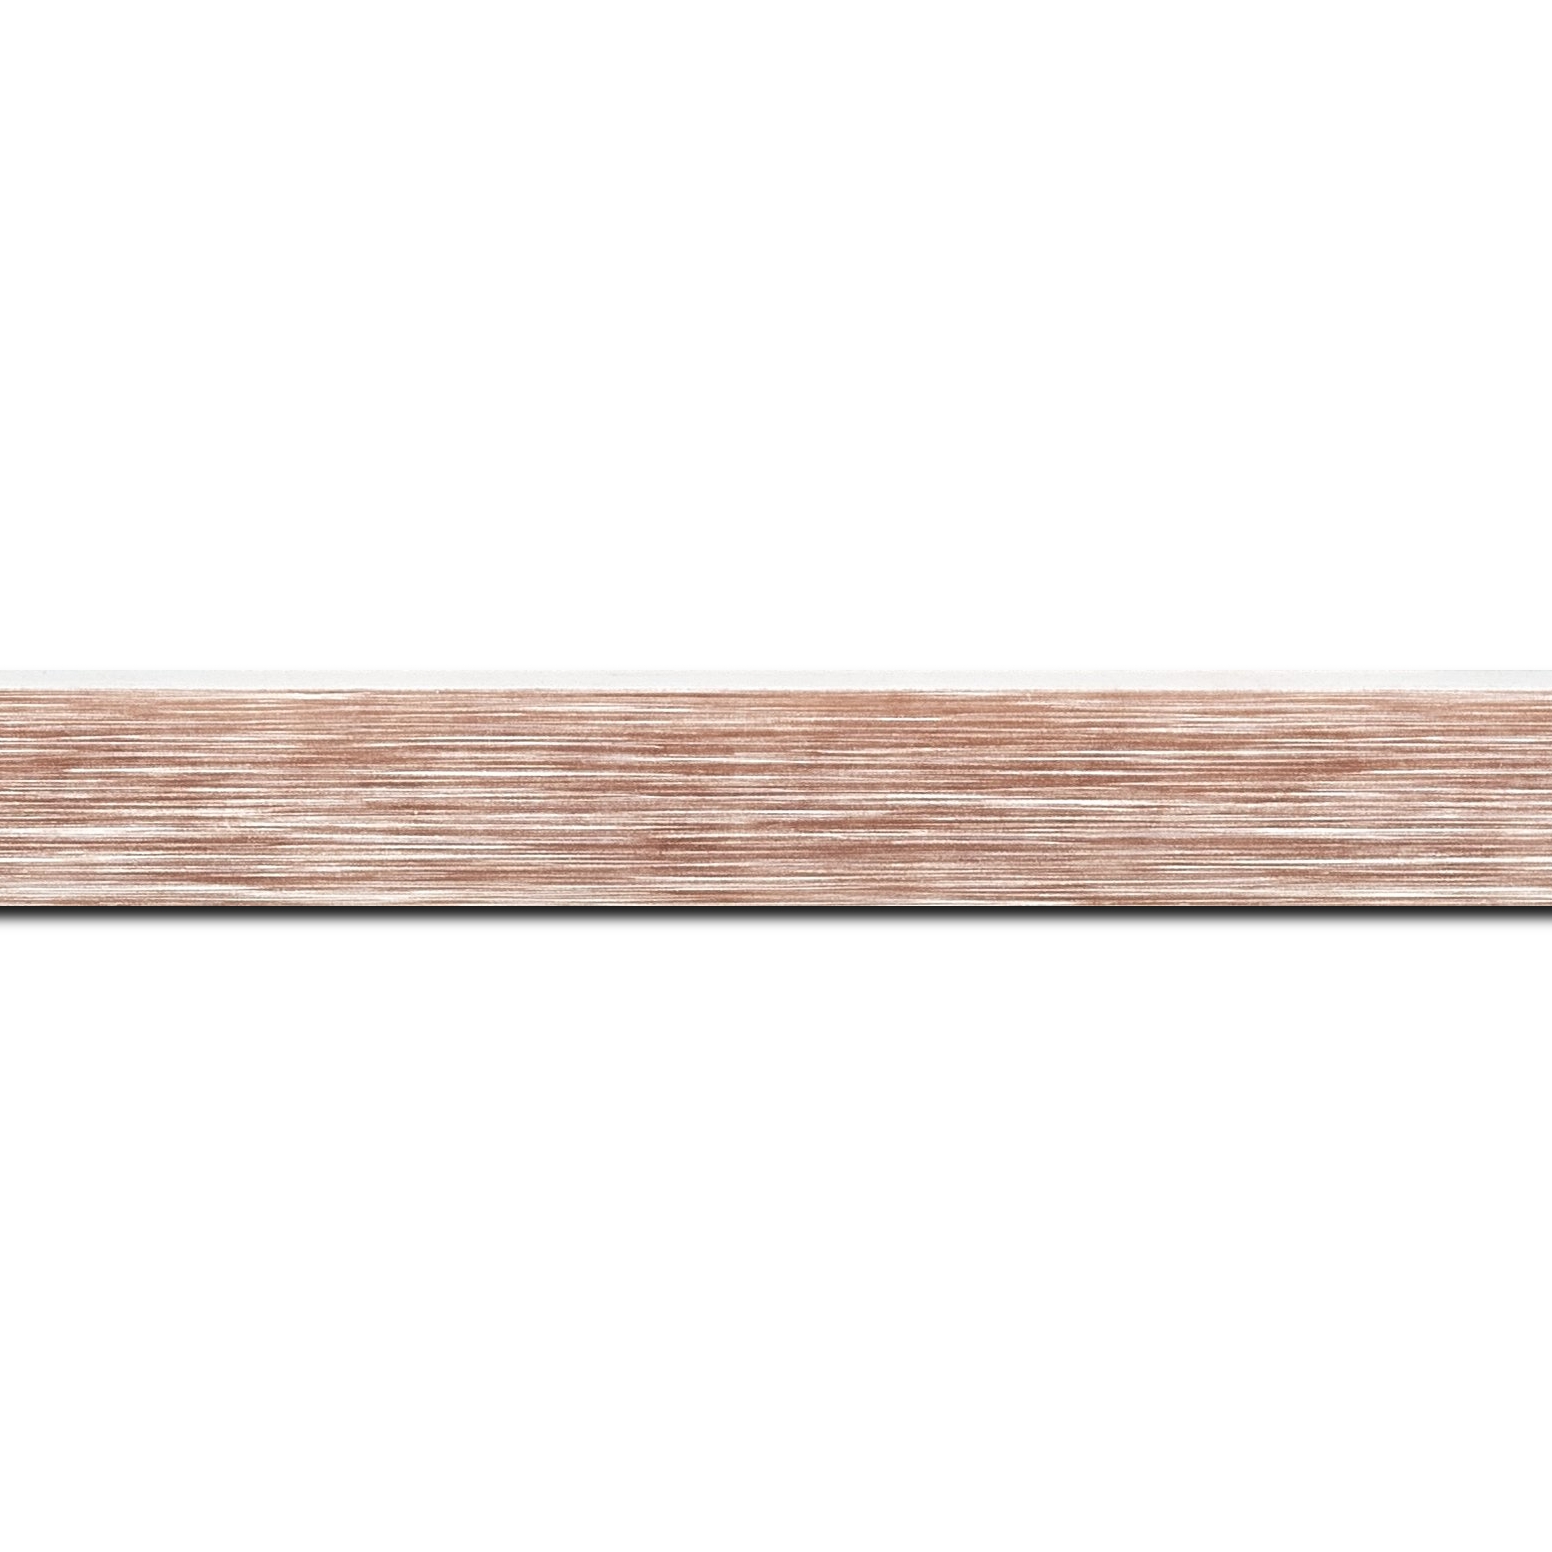 Pack par 12m, bois profil arrondi en pente plongeant largeur 2.4cm couleur marron tendre, arête et chant extérieur du cadre blanc   (longueur baguette pouvant varier entre 2.40m et 3m selon arrivage des bois)